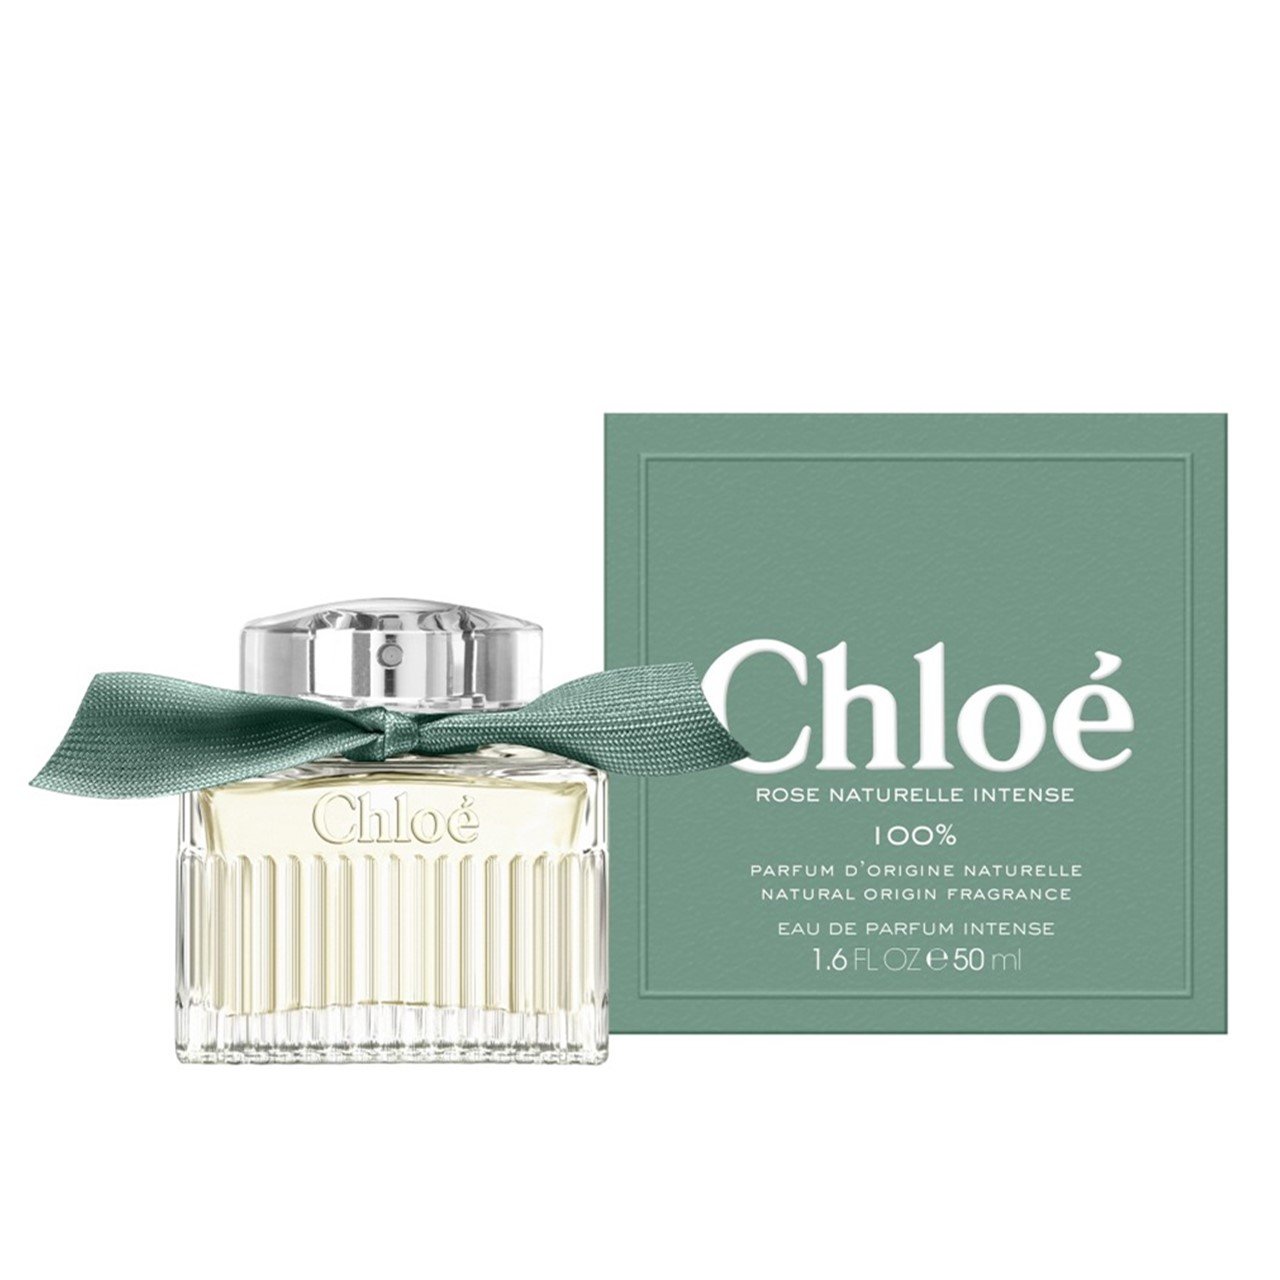 Chloé Rose Naturelle Intense Eau de Parfum 50ml (1.6floz)